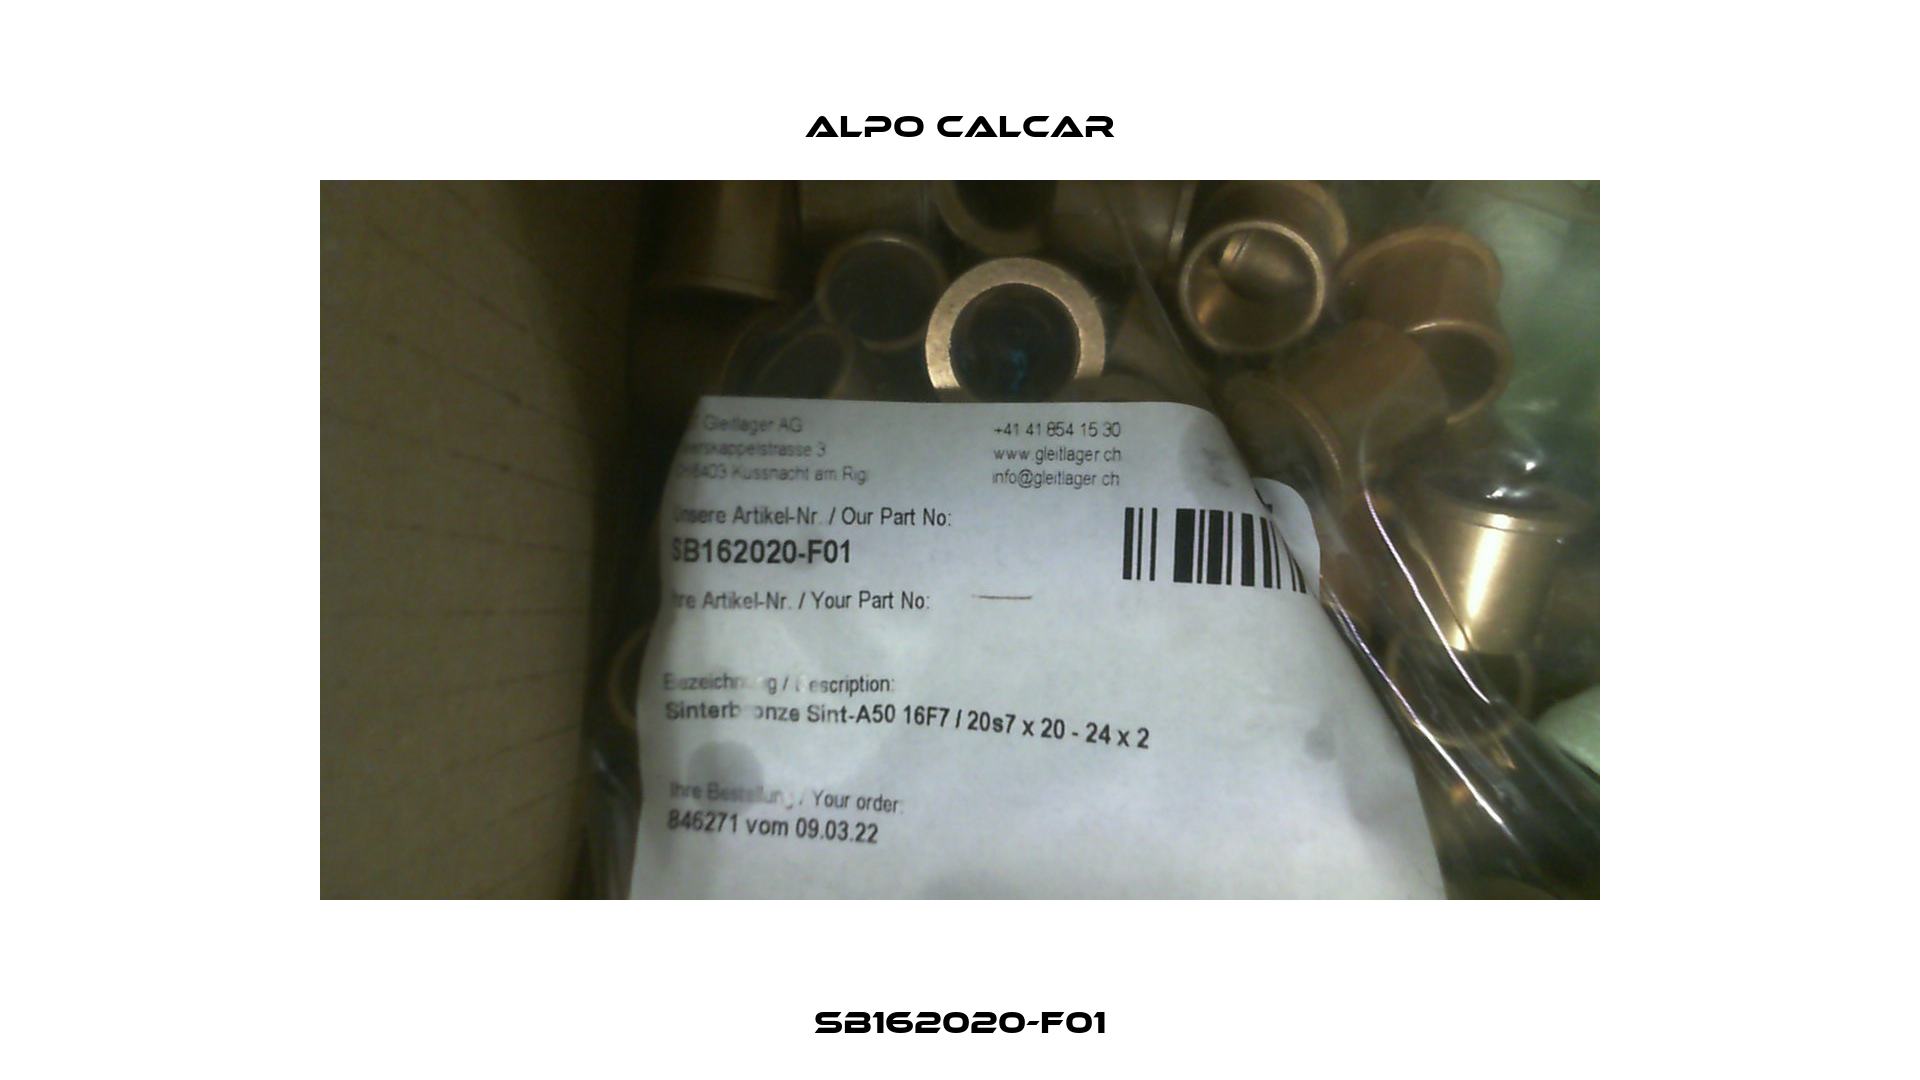 SB162020-F01 Alpo Calcar